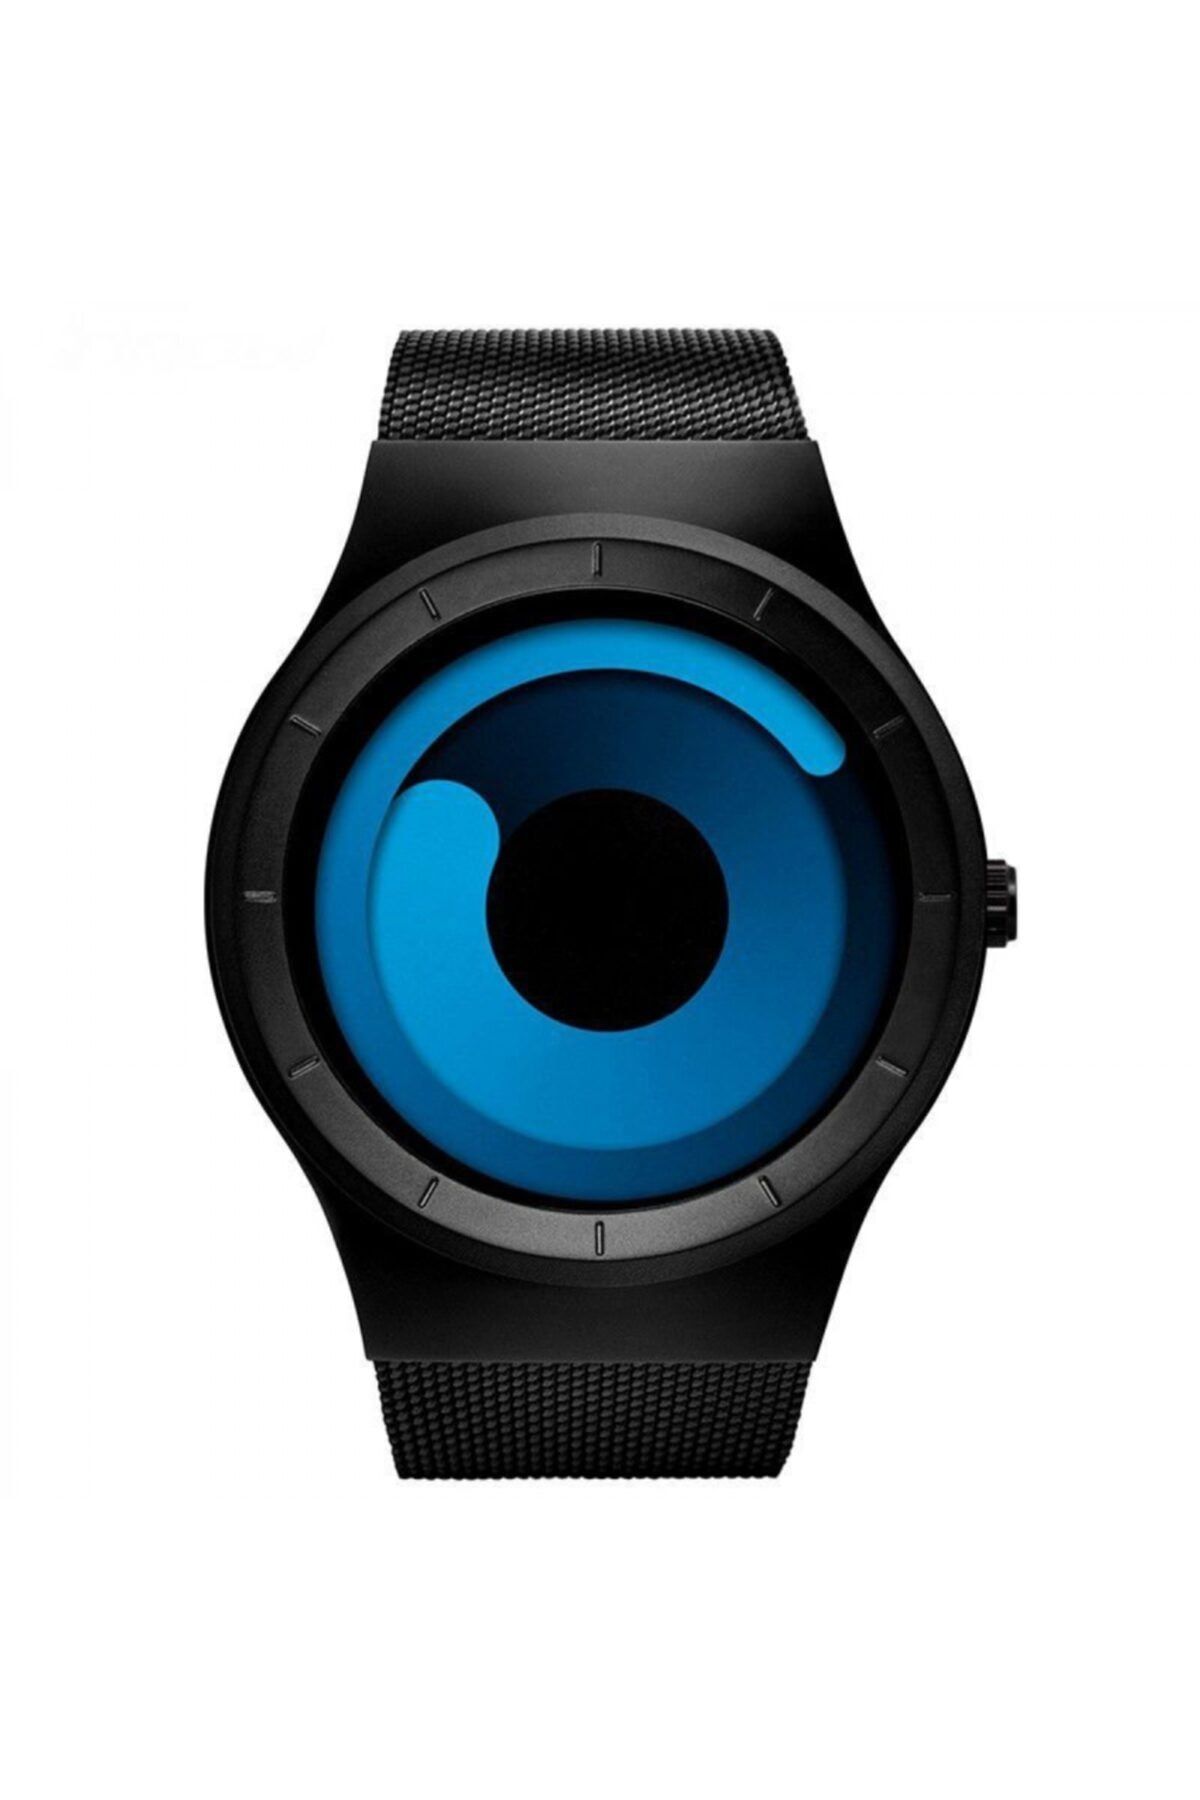 Cool Watch - Siyah Mat Kasa - Siyah Kordon Cool Galaxy S Mavi Ekran Unisex Kol Saati